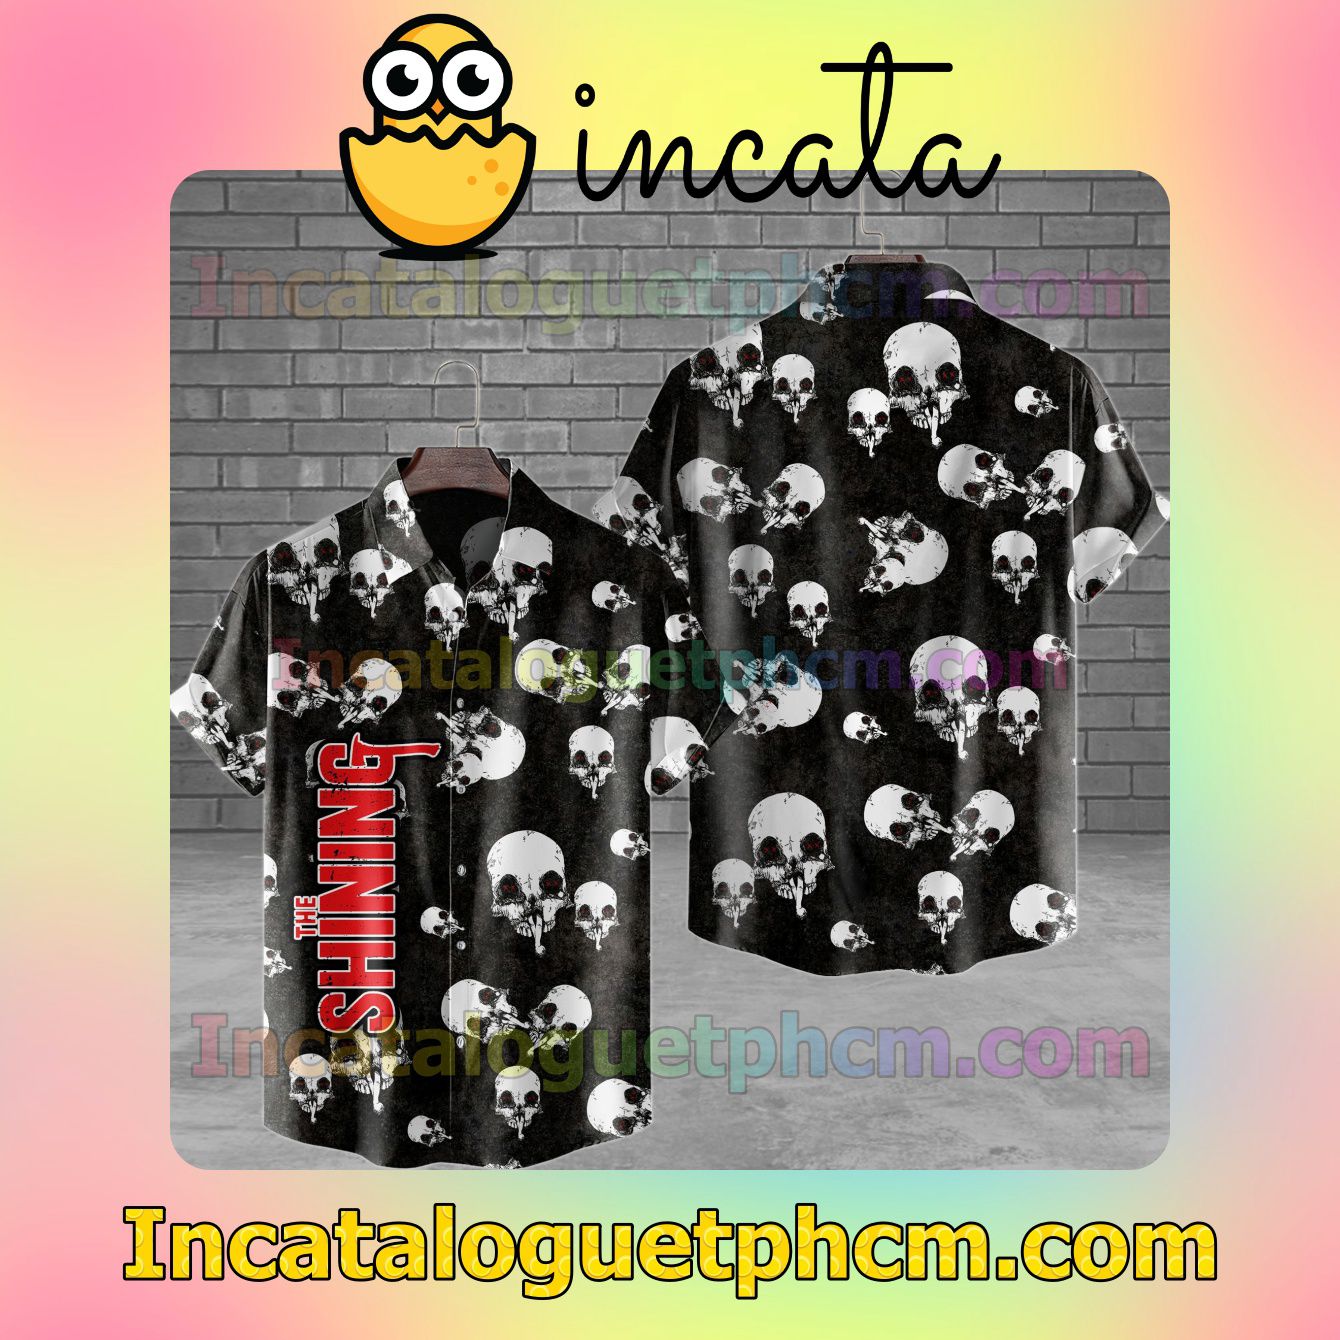 The Shining Skull Unisex Shirts